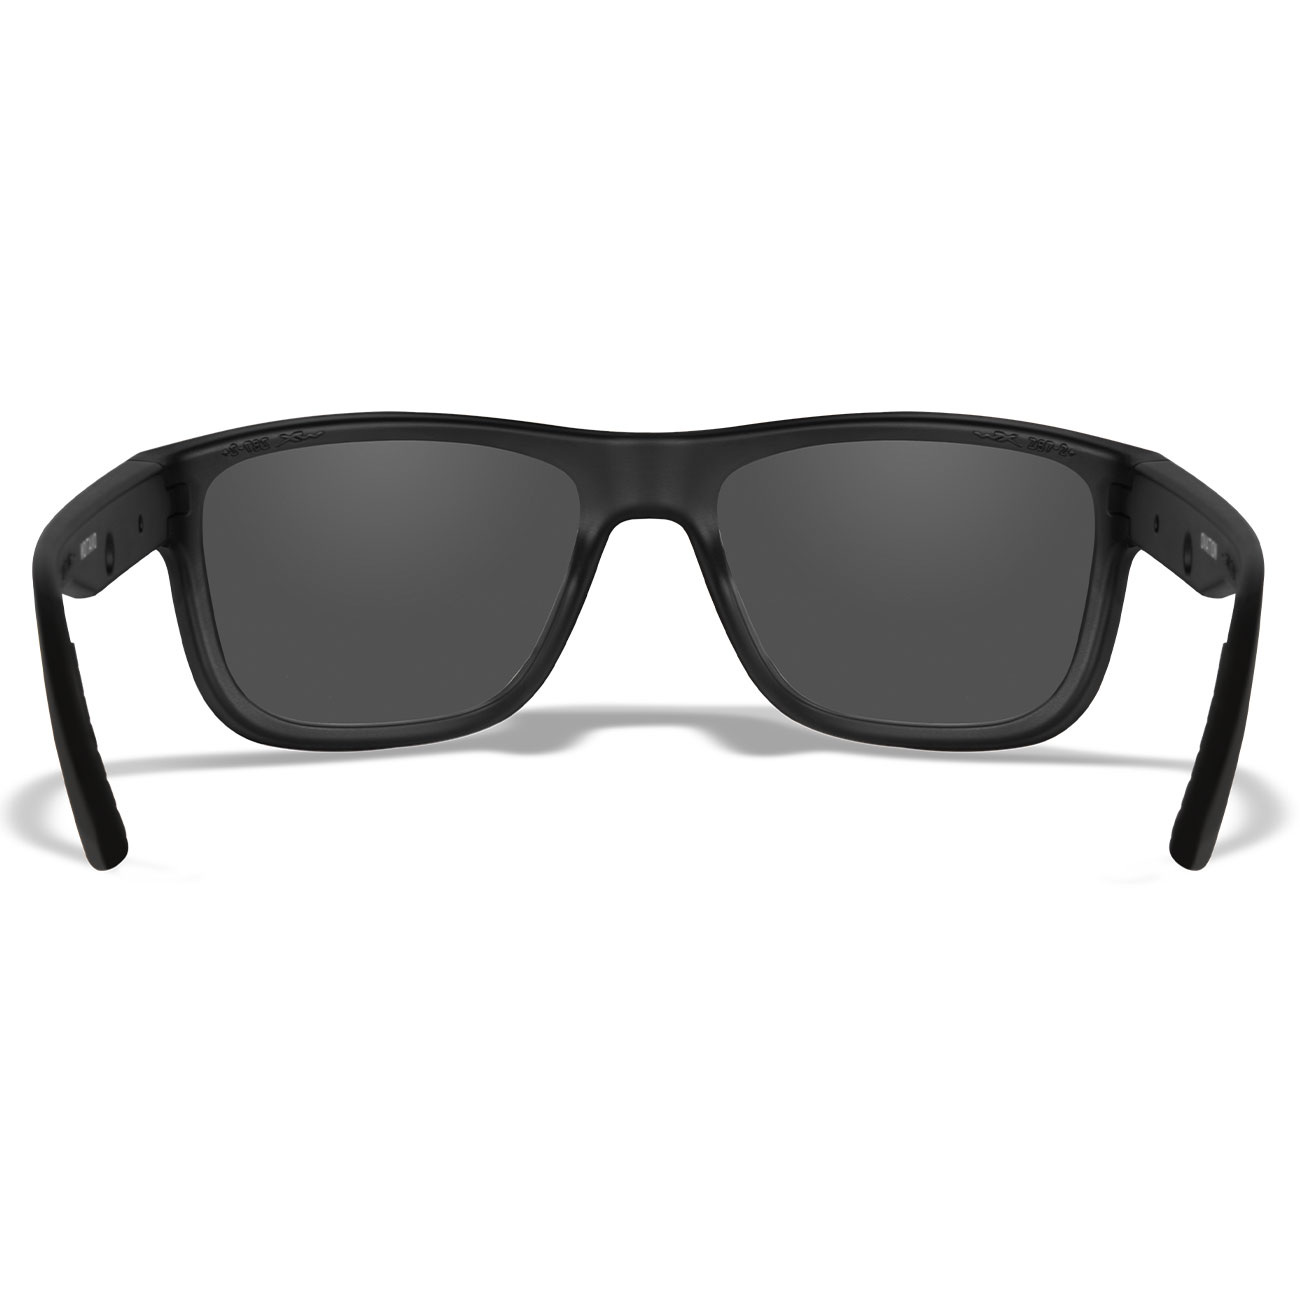 Wiley X Sonnenbrille Ovation matt schwarz Glser grau inkl. Brillenetui und Seitenschutz Bild 3